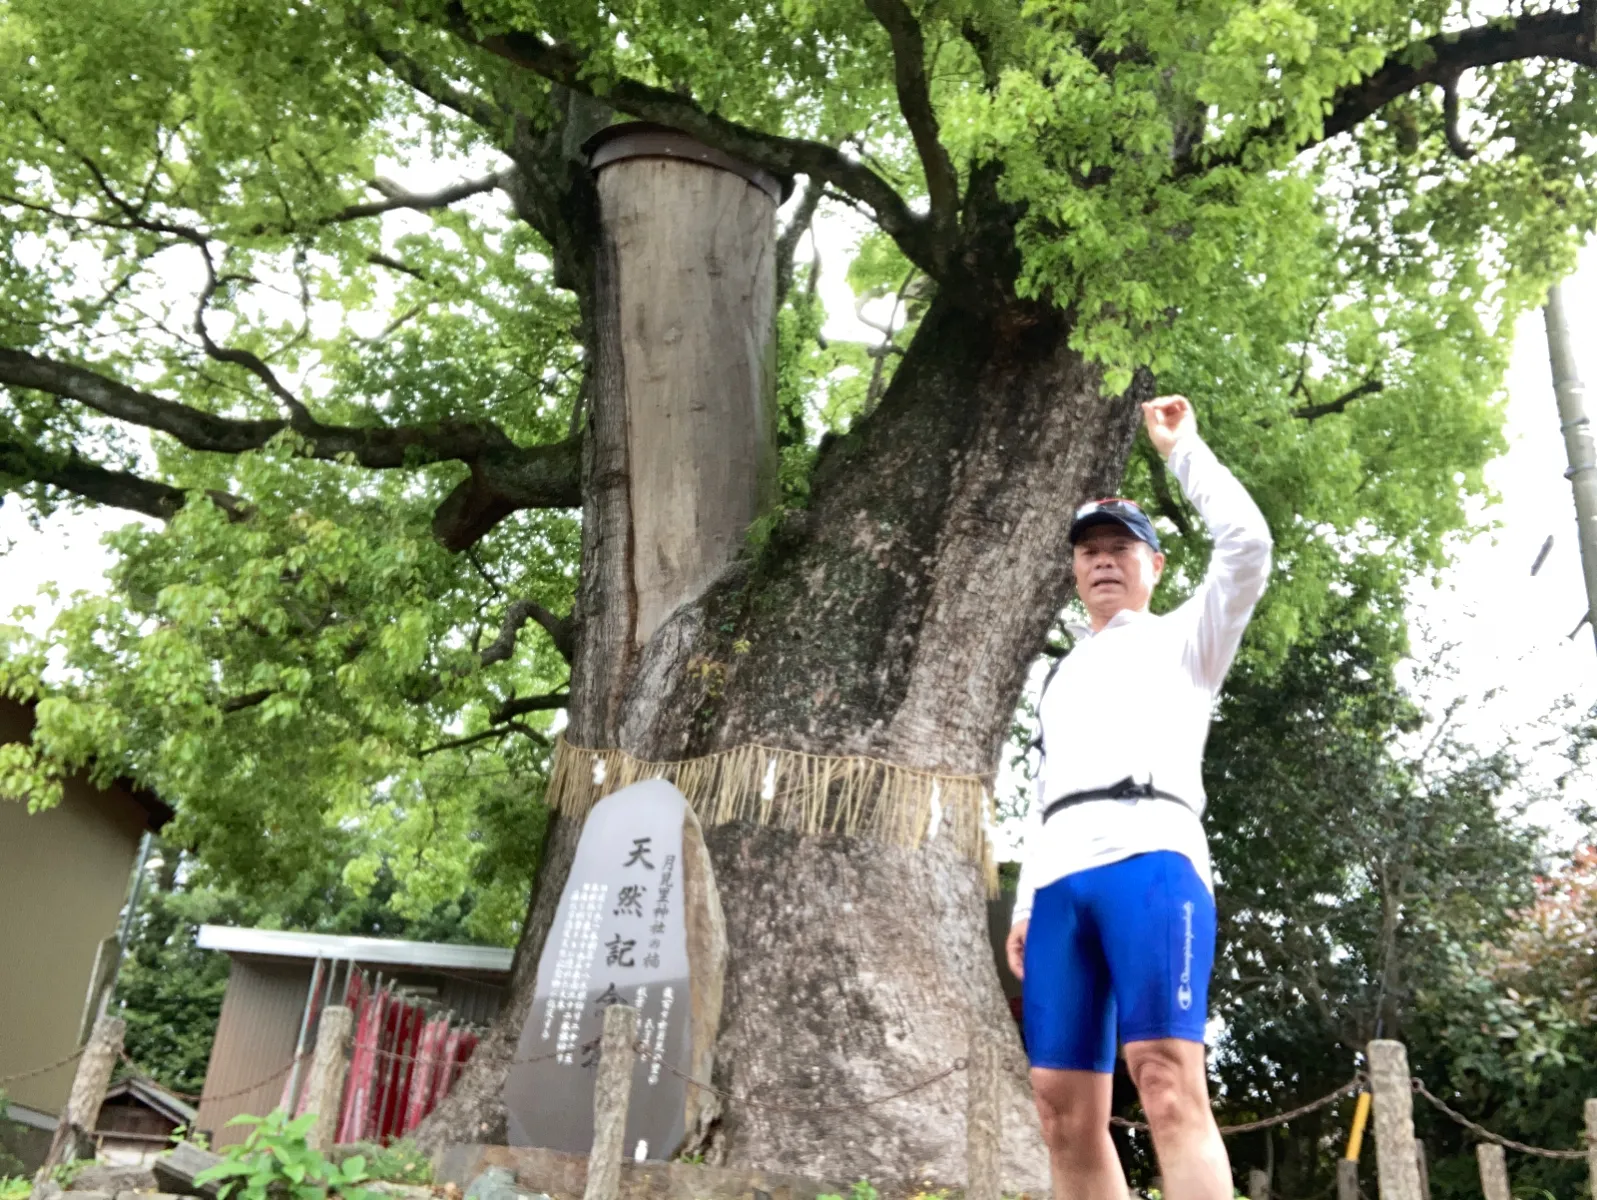 東海道の裏手にある神社境内の楠木。
幹の周囲は９mある、天然記念物。

二股に分かれた片方は、上部が途中から
ありません。自然災害を受けたかも？